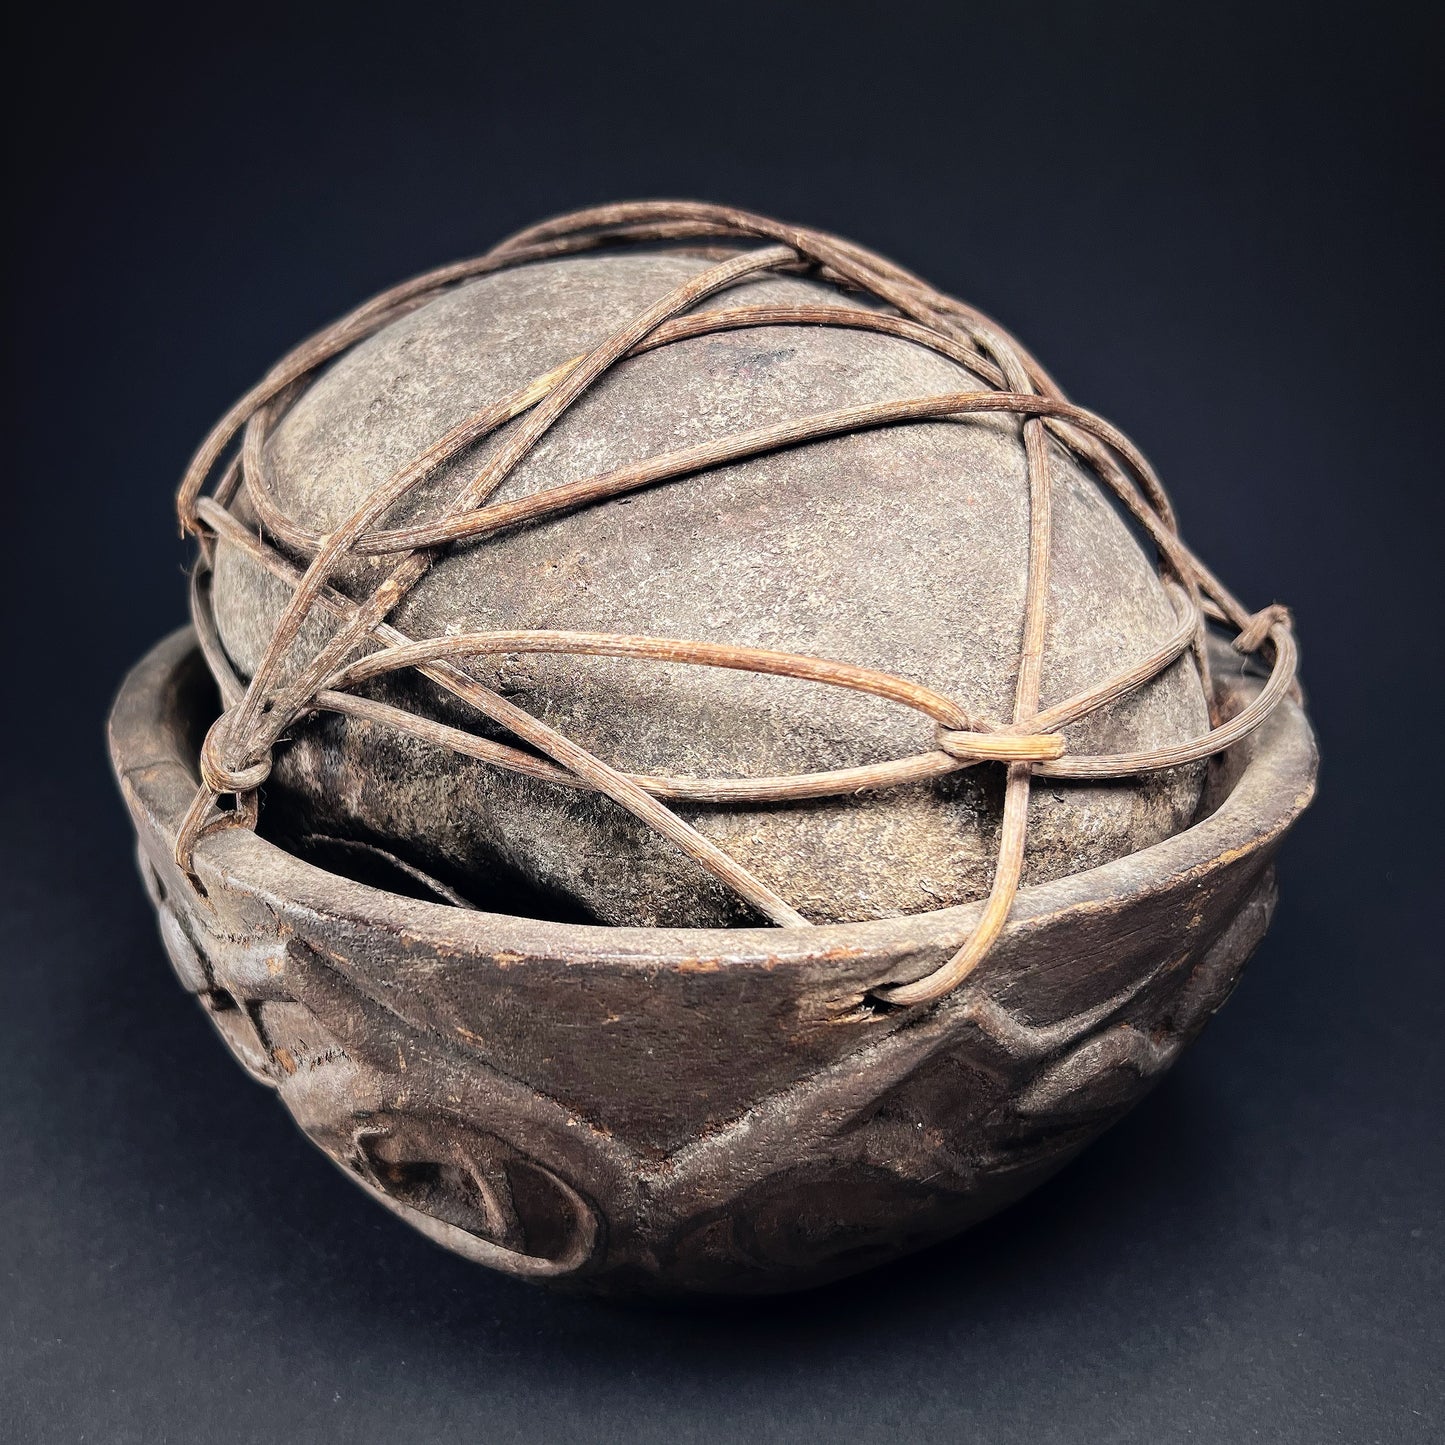 Iban Dayak Bamboo-Bound Trophy Human Skull Bowl